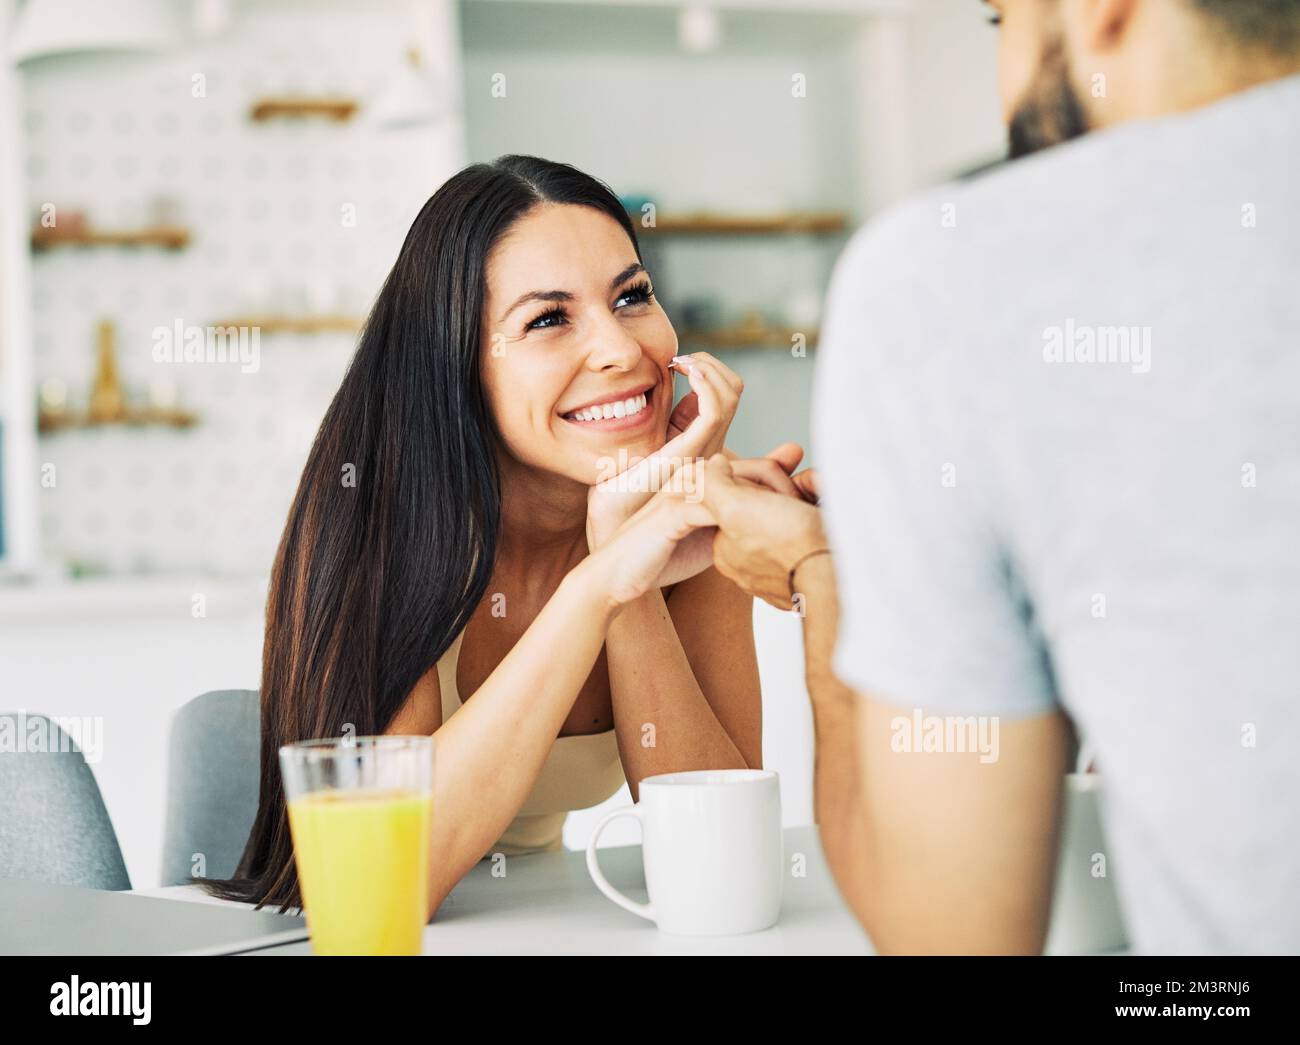 Frau Mann Paar reden Liebe junge Mädchen Lifestyle Freund zusammen lächelnd glücklich Freundin Romantik Café Stockfoto